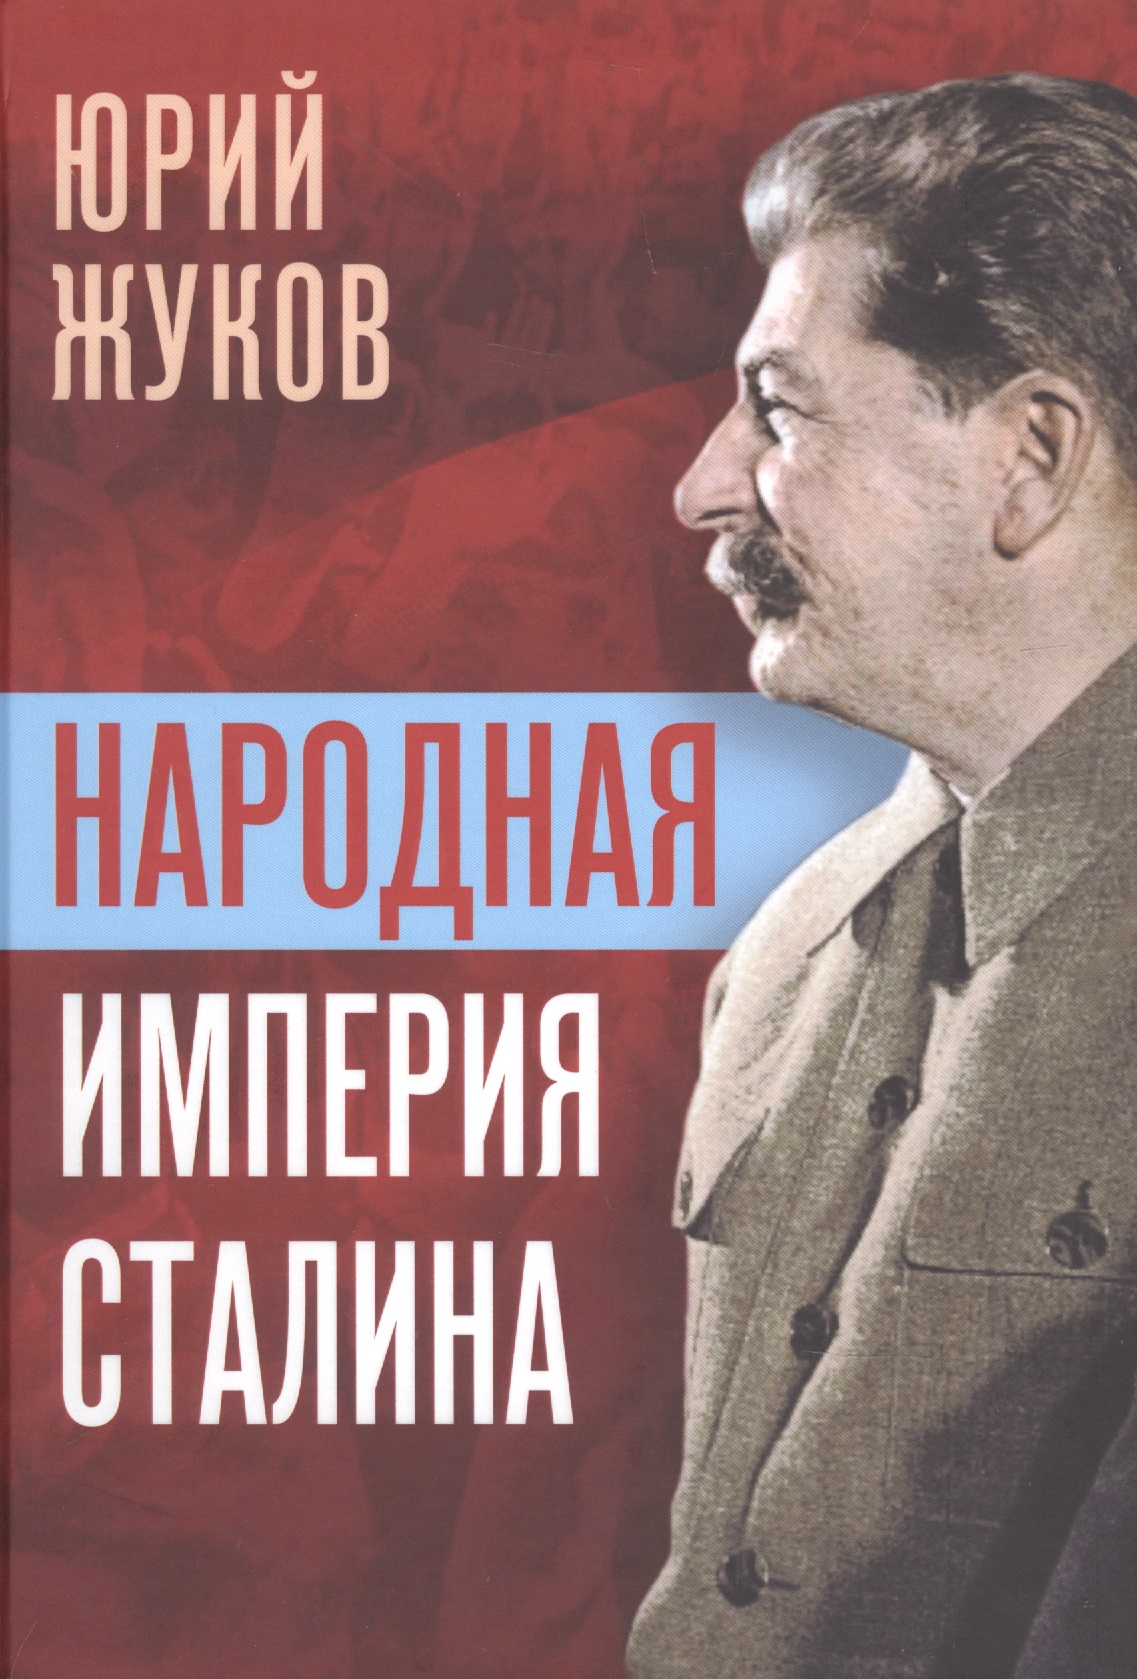 Жуков Юрий Николаевич - Народная империя Сталина